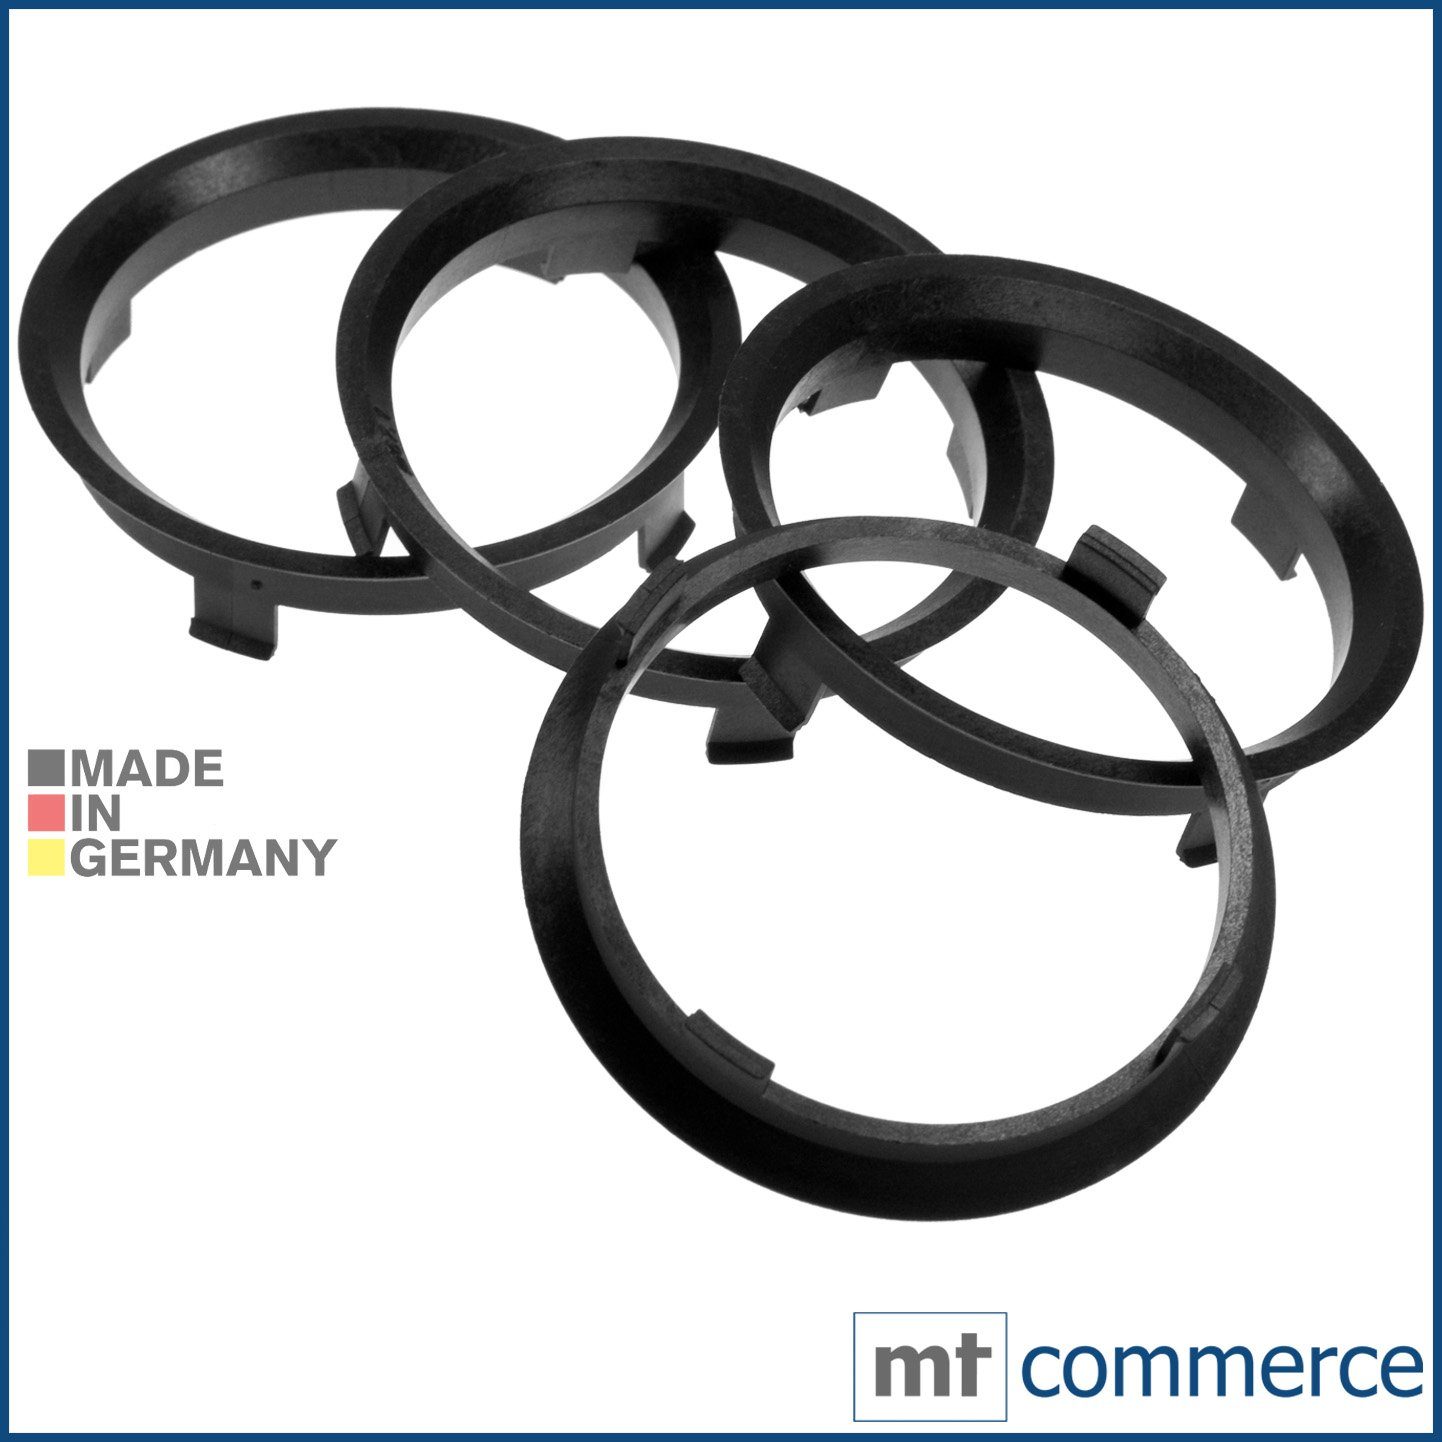 RKC Reifenstift 4X Zentrierringe schwarz Felgen Ringe Made in Germany, Maße: 71,6 x 67,1 mm